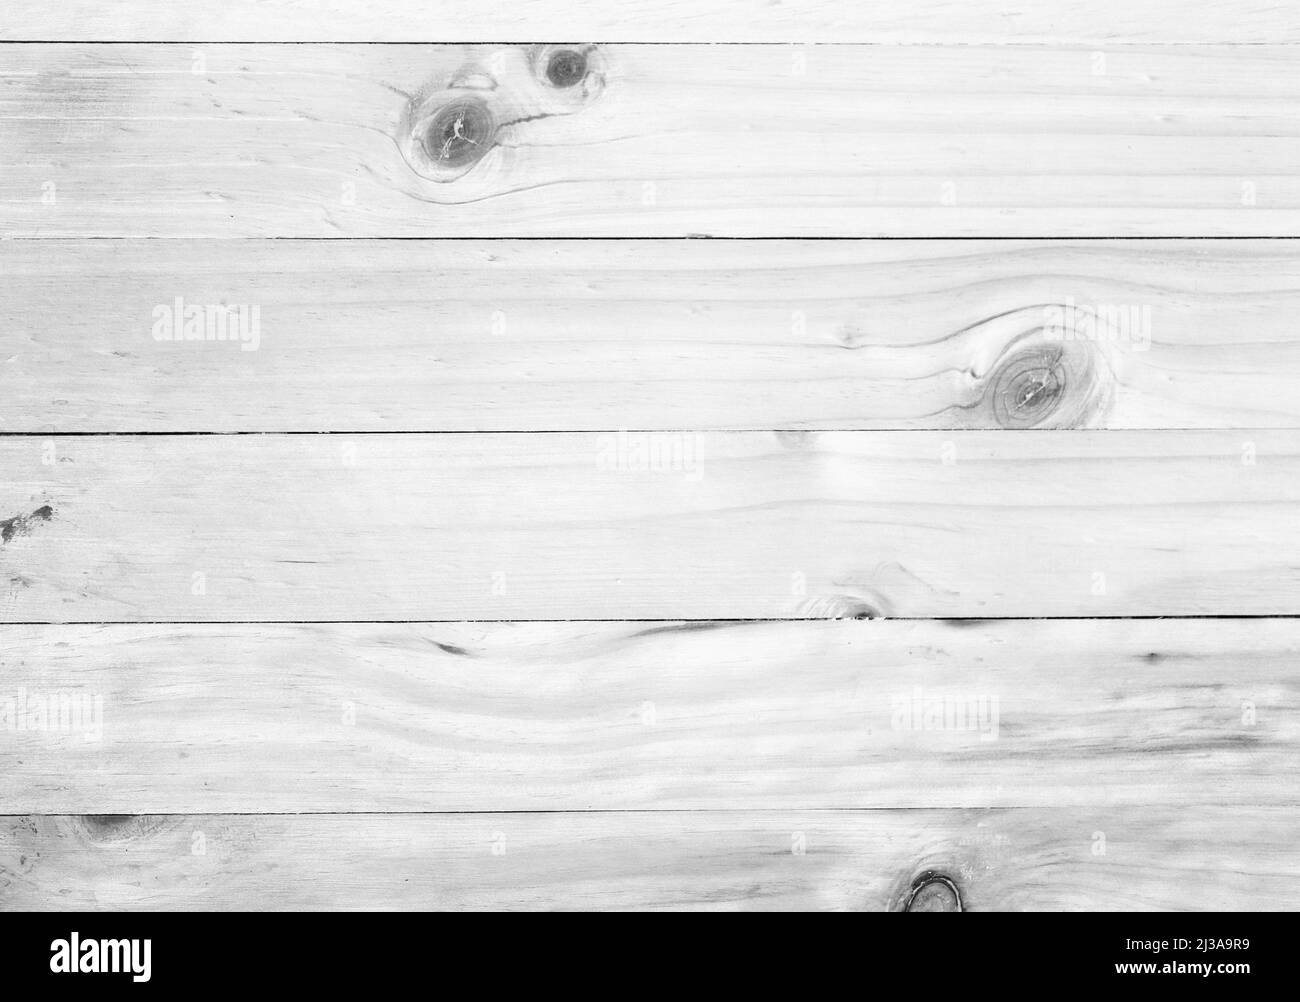 Fond de texture de bois blanc, planches blanches pour le design dans votre travail. Banque D'Images